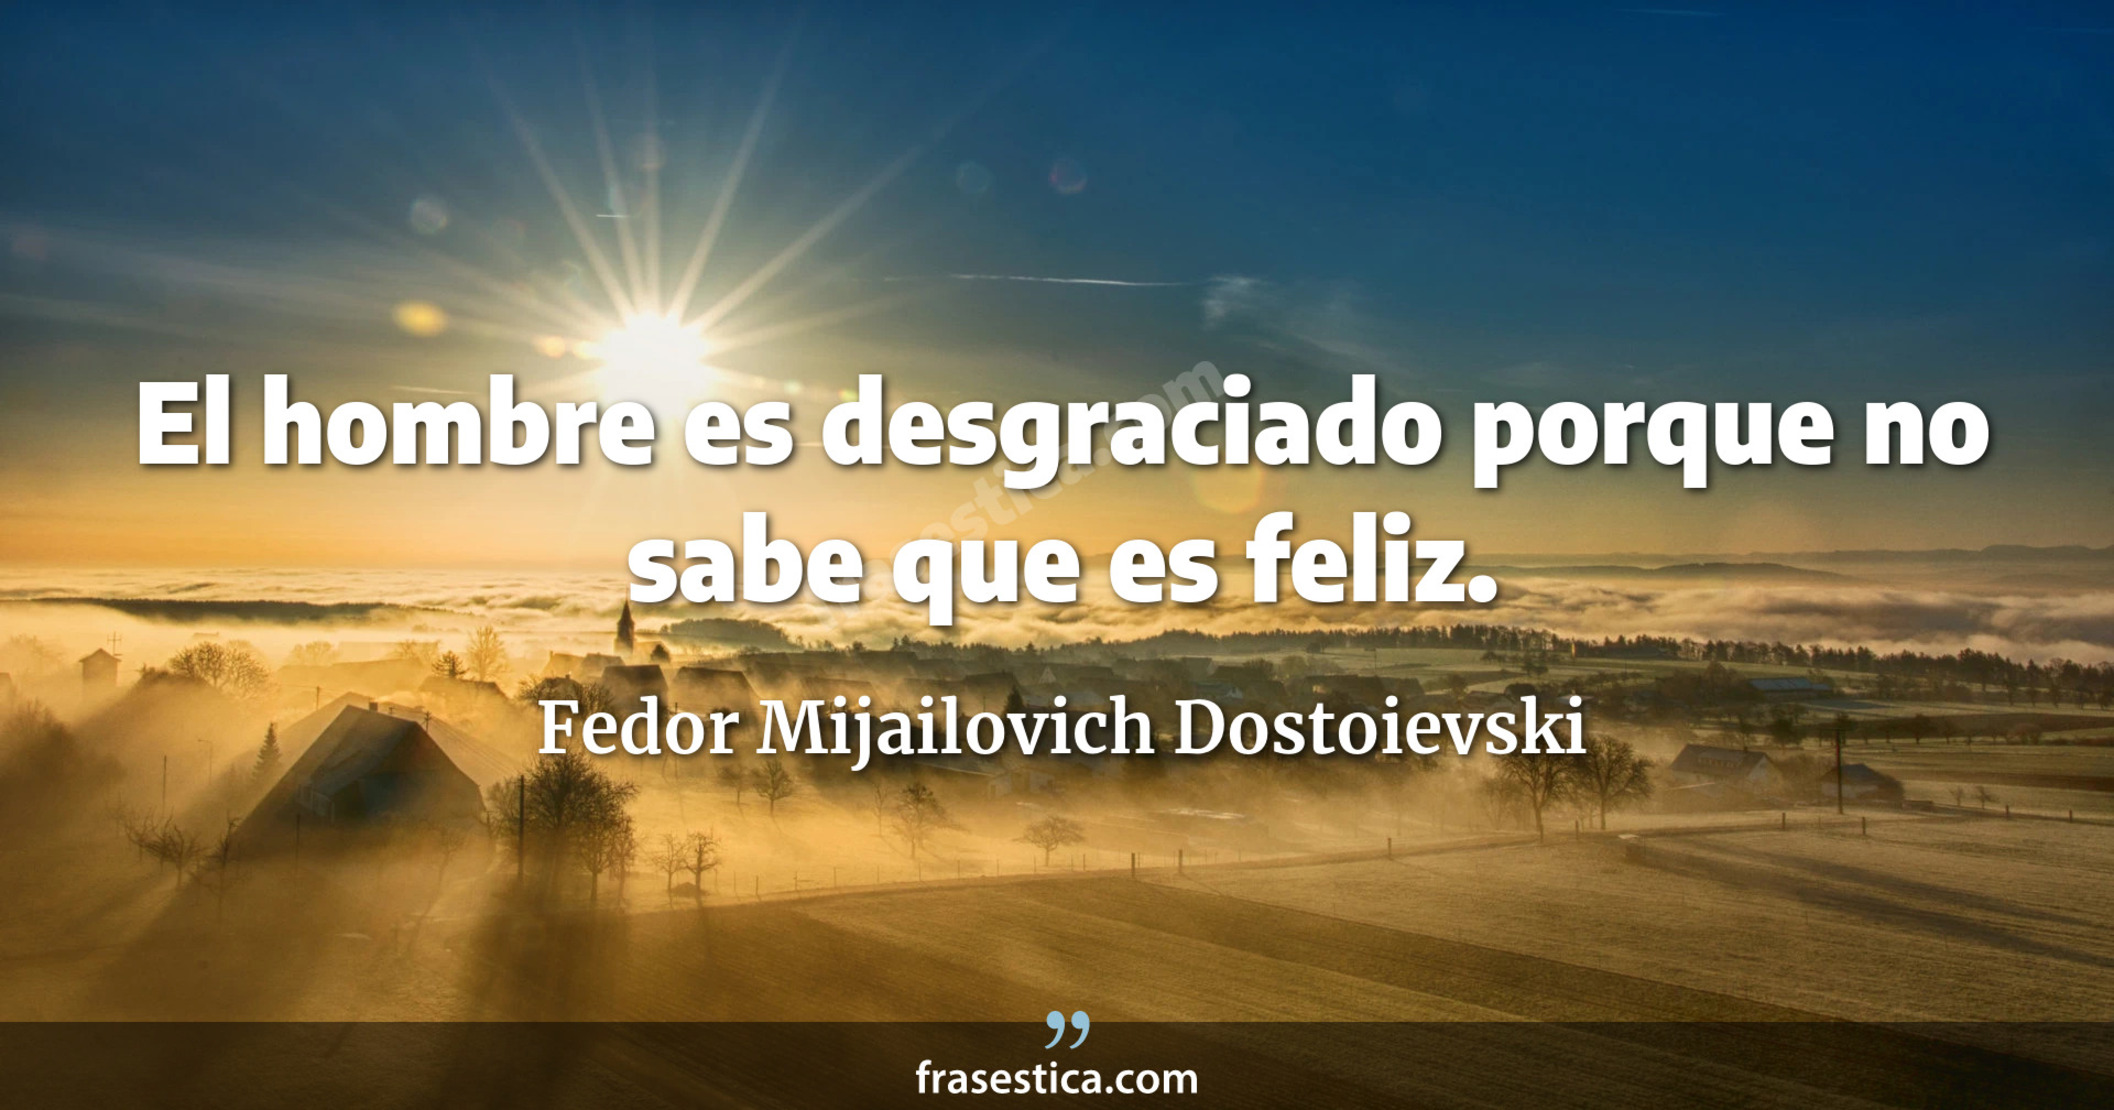 El hombre es desgraciado porque no sabe que es feliz. - Fedor Mijailovich Dostoievski